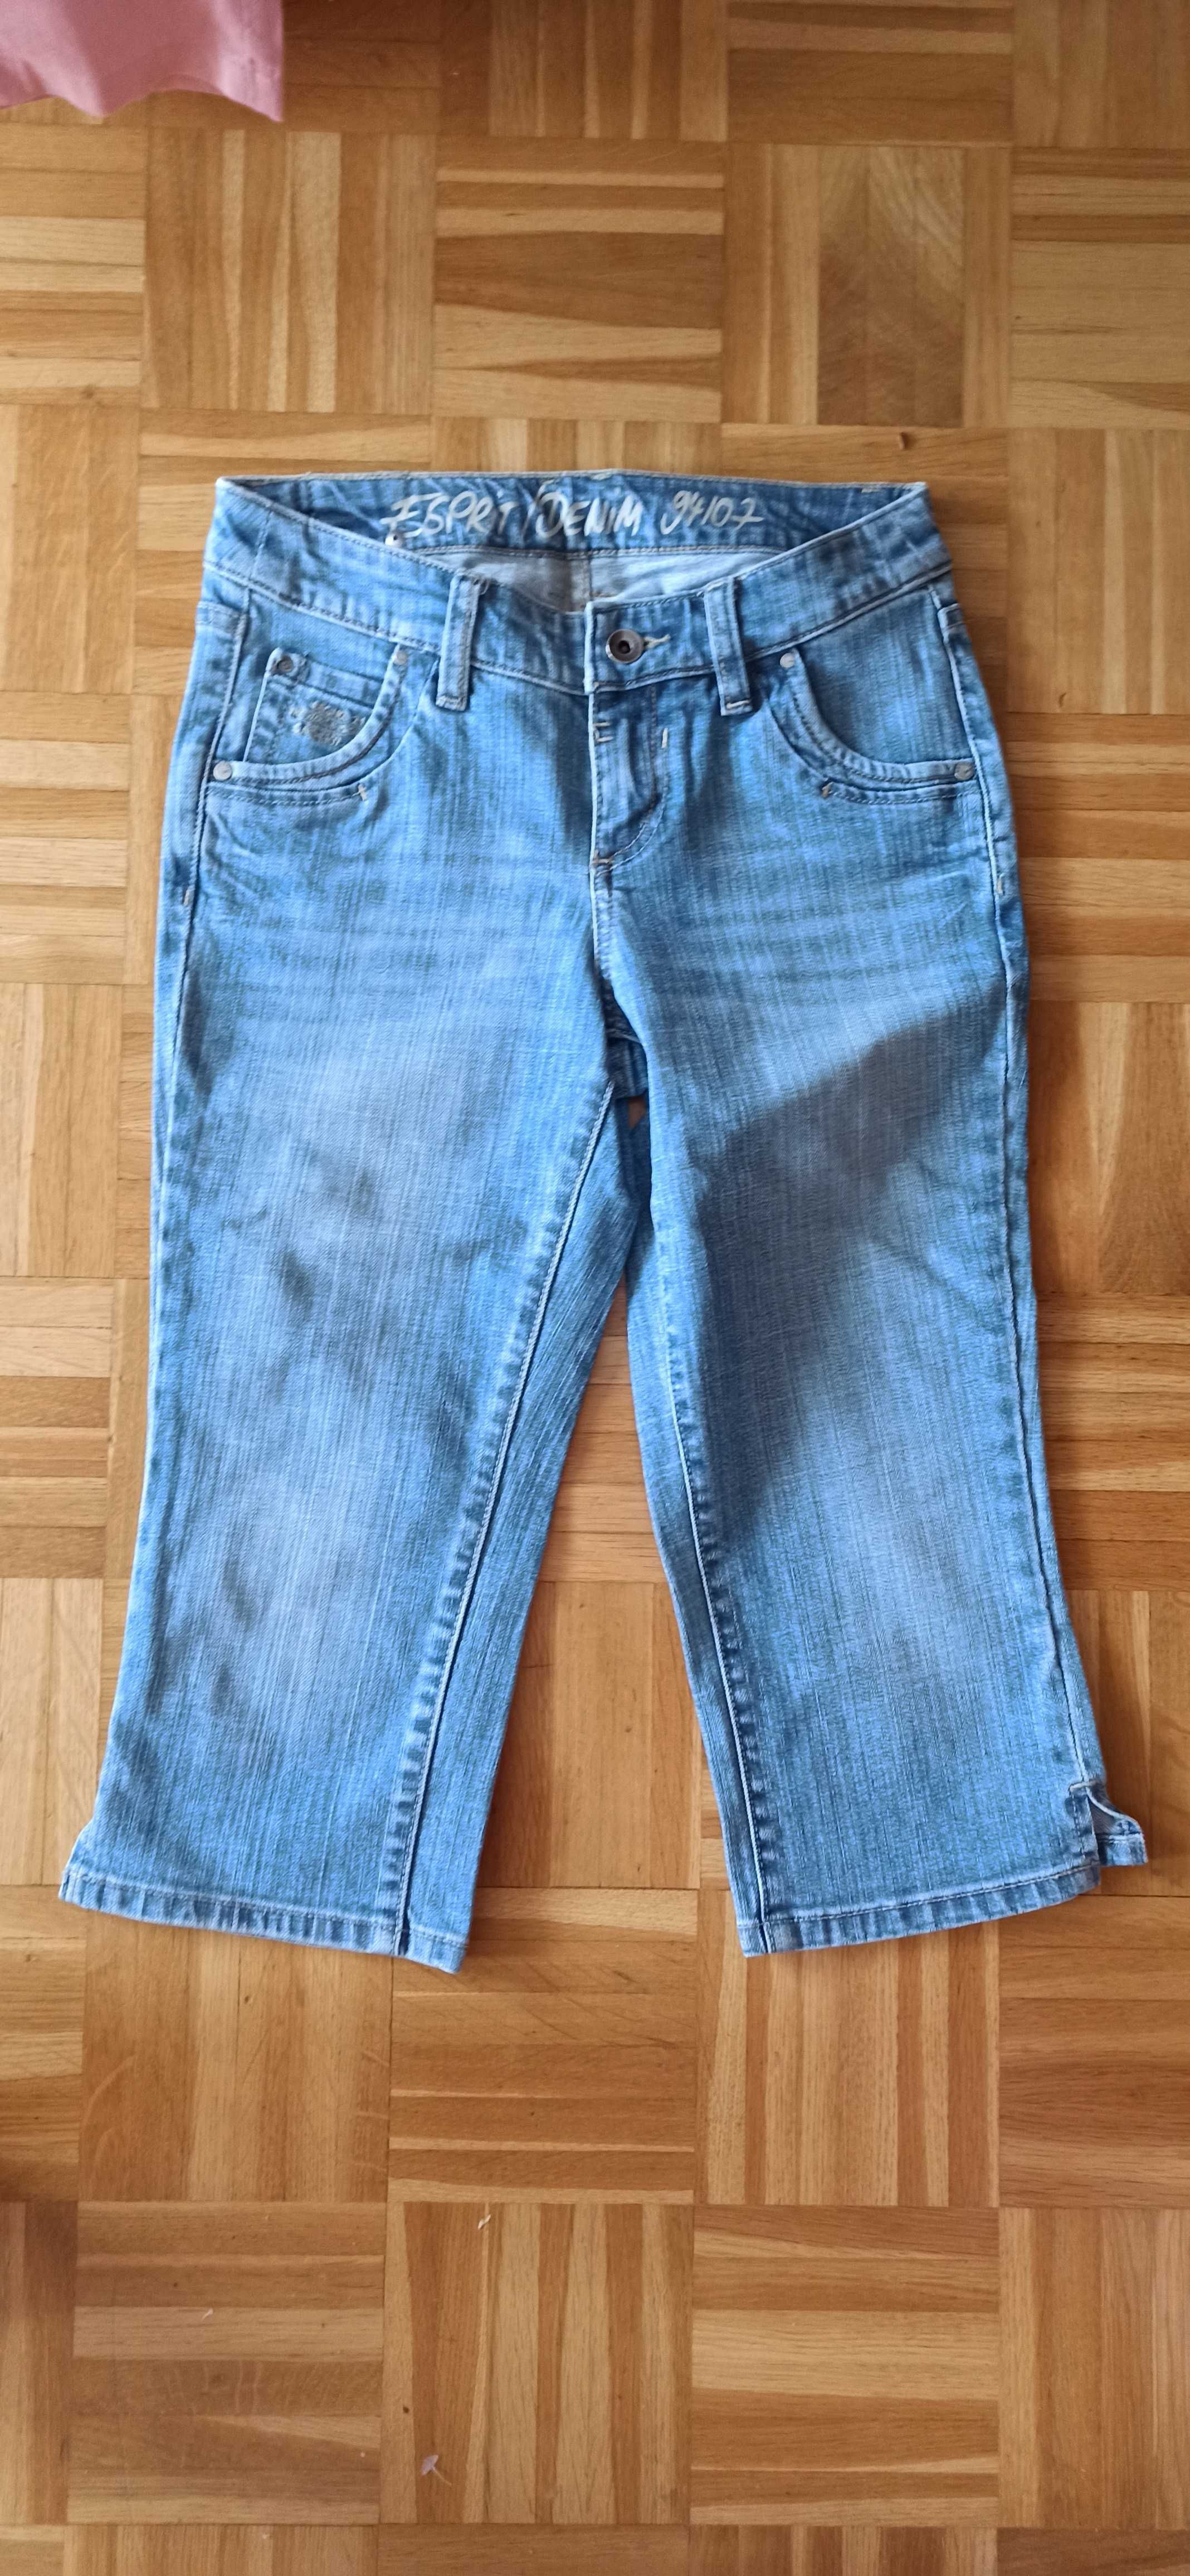 Damskie jeansowe spodnie rybaczki Esprit rozm. S